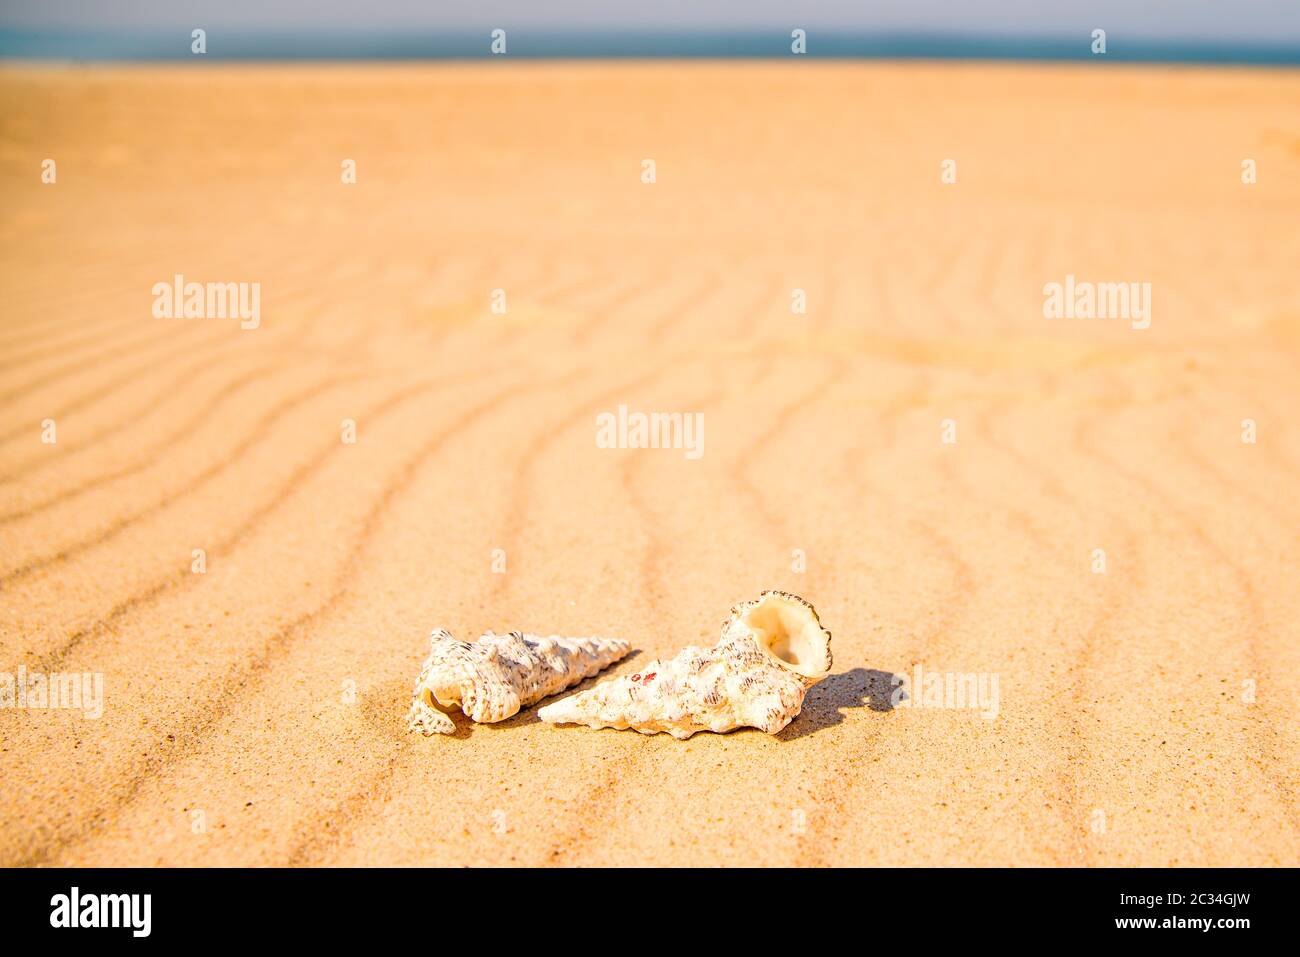 snails on a sandy beach Stock Photo